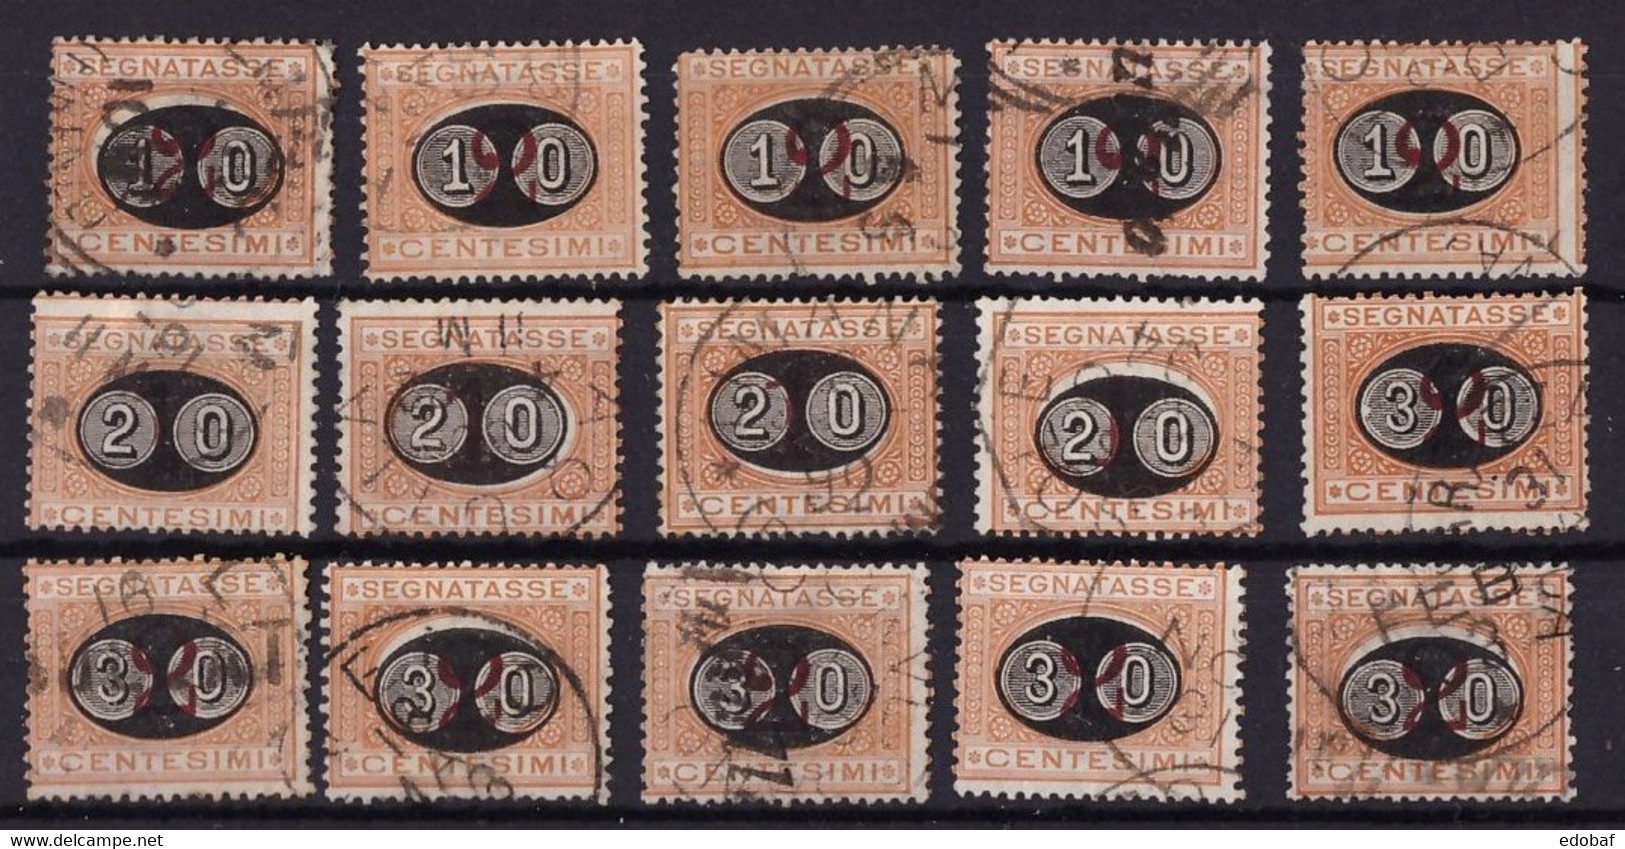 Regno, Lotto Serie Segnatasse Mascherine Del 1890 Usate        -DR13 - Taxe